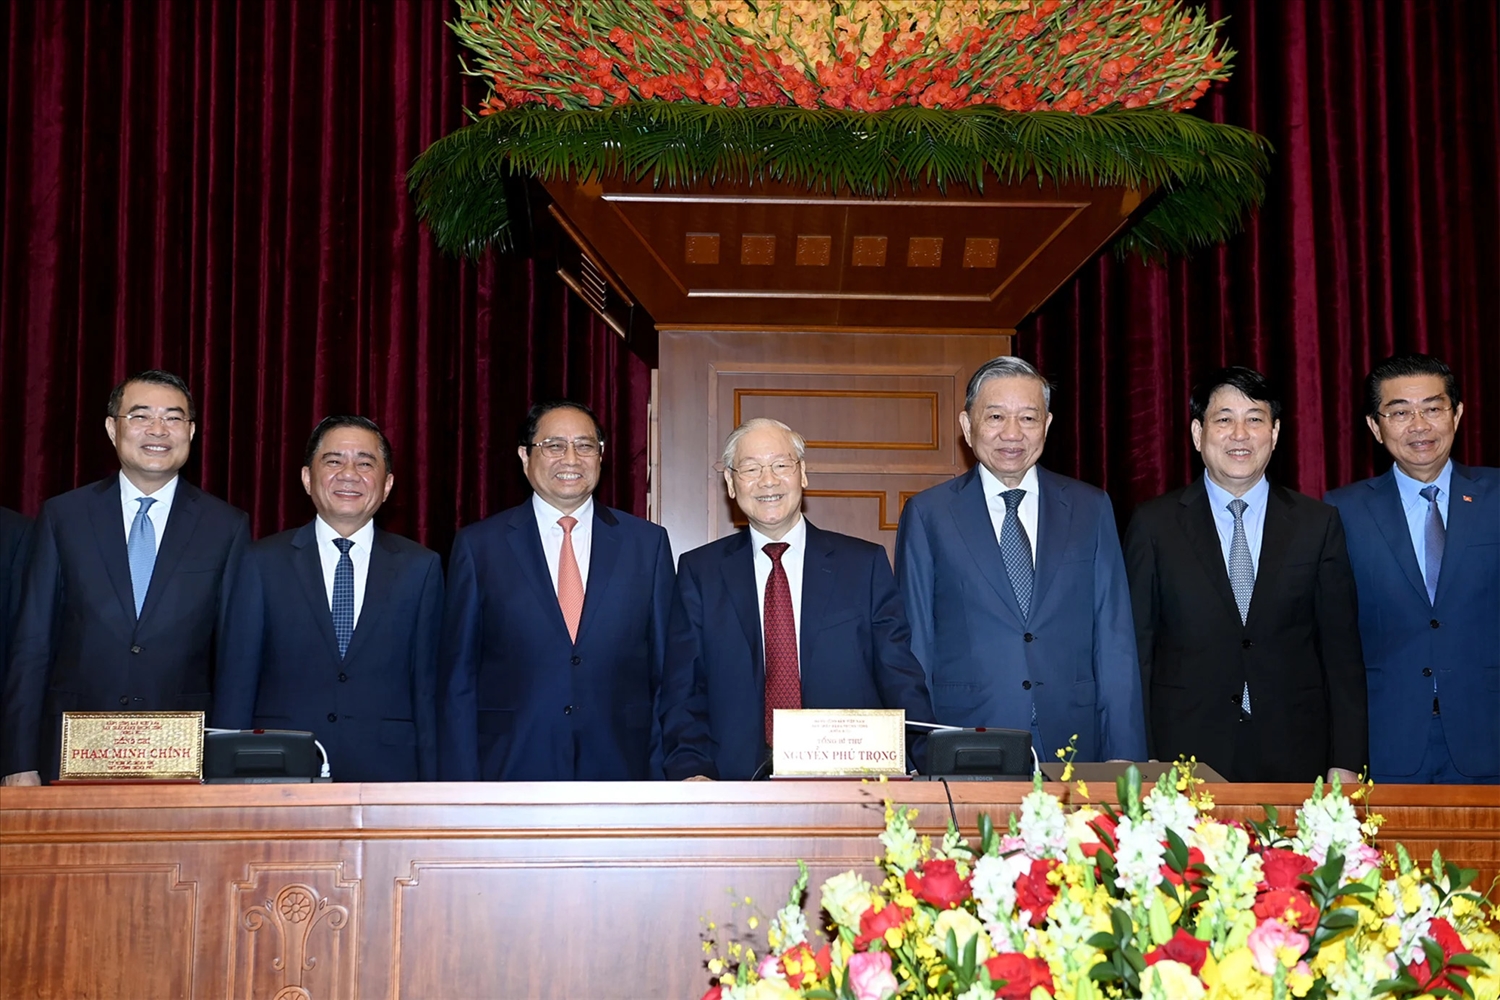 Tổng Bí thư Nguyễn Phú Trọng và các đồng chí lãnh đạo Đảng, Nhà nước dự phiên bế mạc Hội nghị.